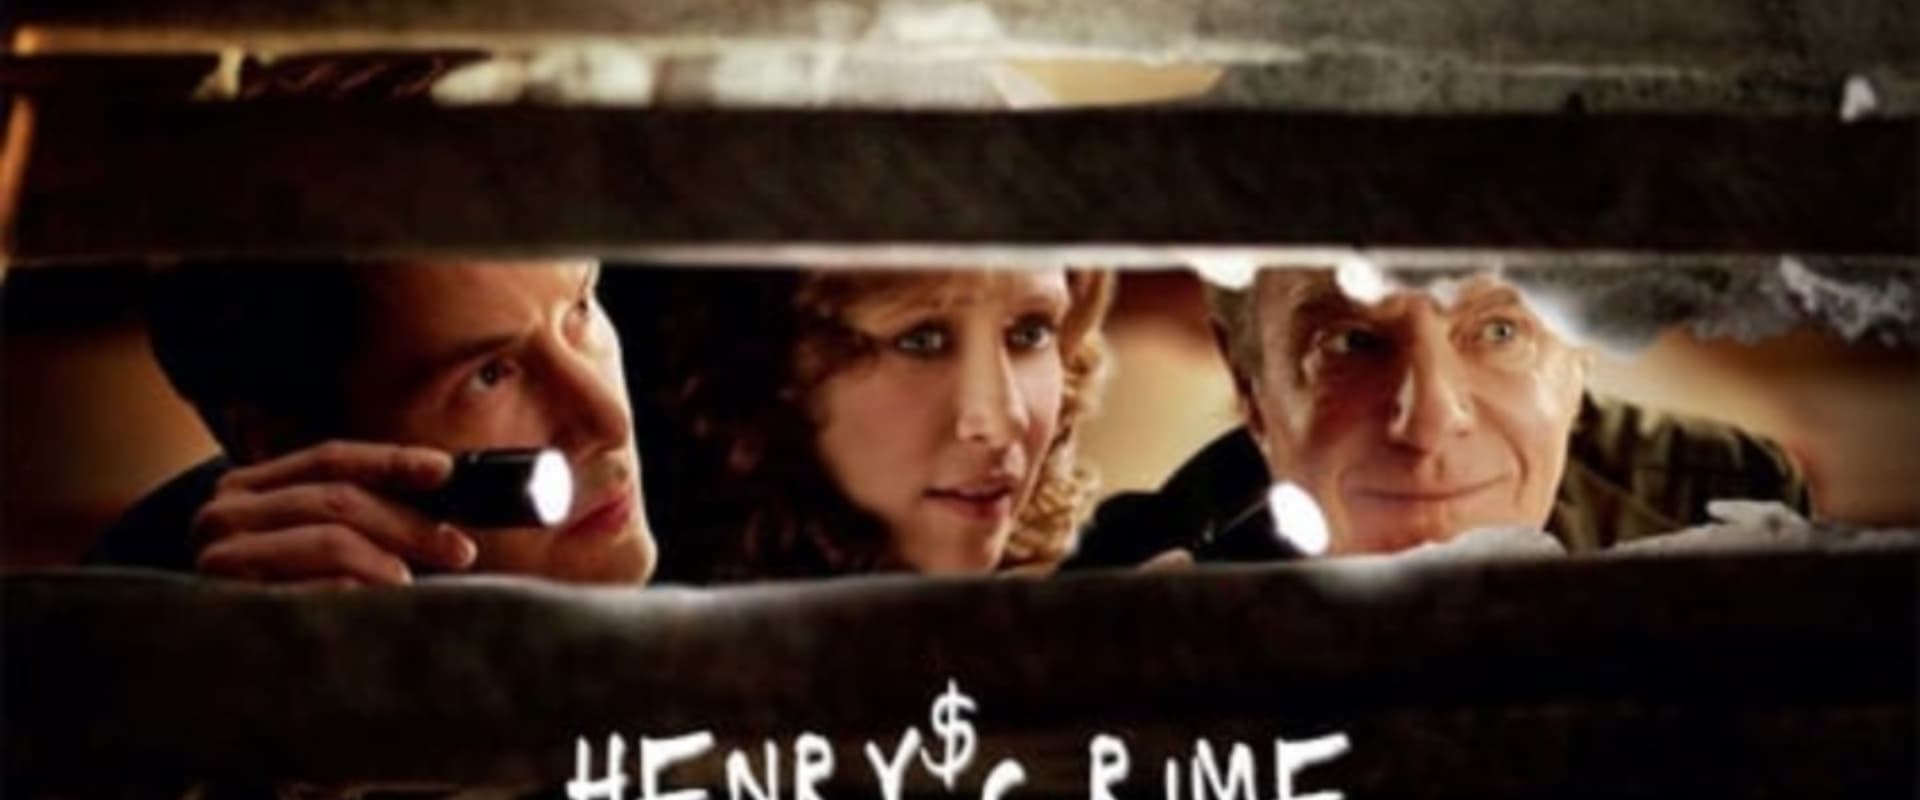 Henry & Julie